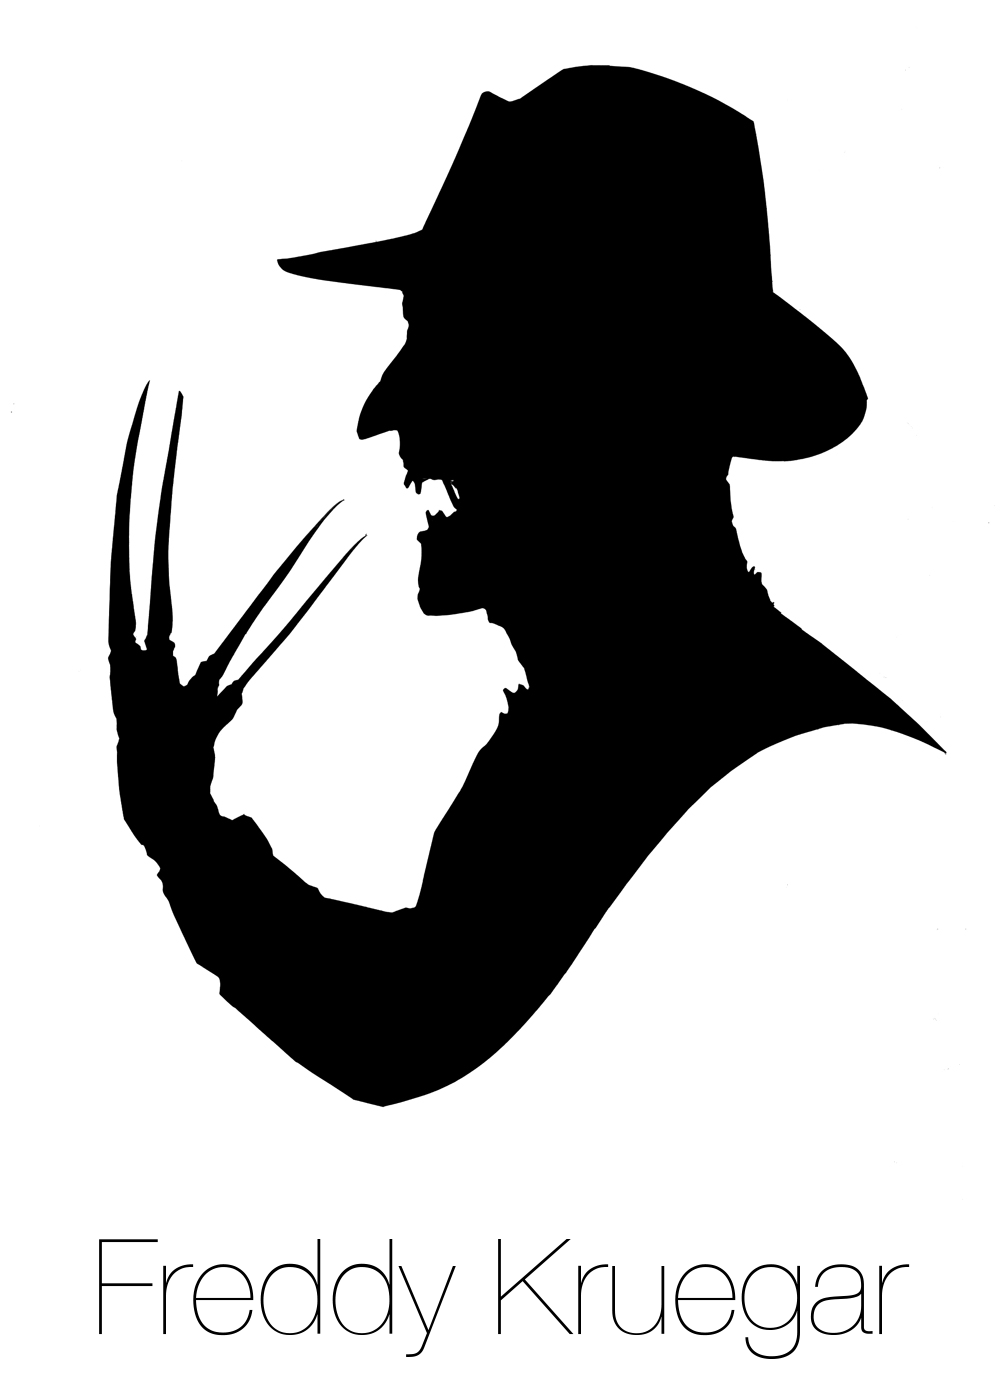 Freddy Krueger Logo - Freddy Krueger silhouette. Happy Horror Days in 2019